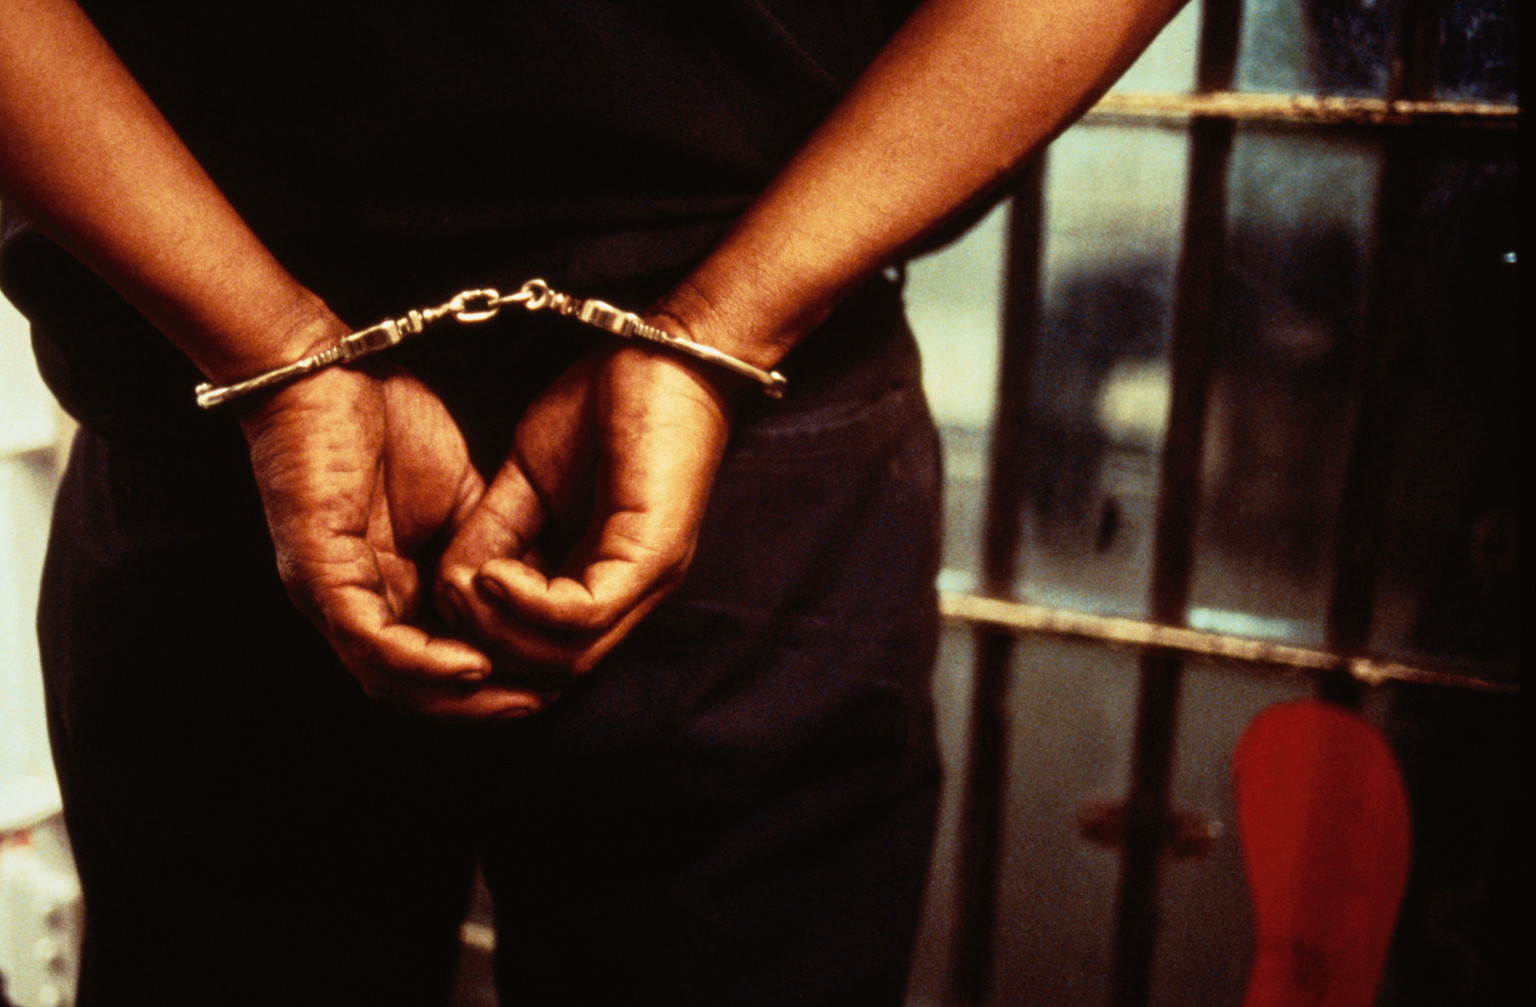 Kwabenya jail break: Suspect busted at Asikasu